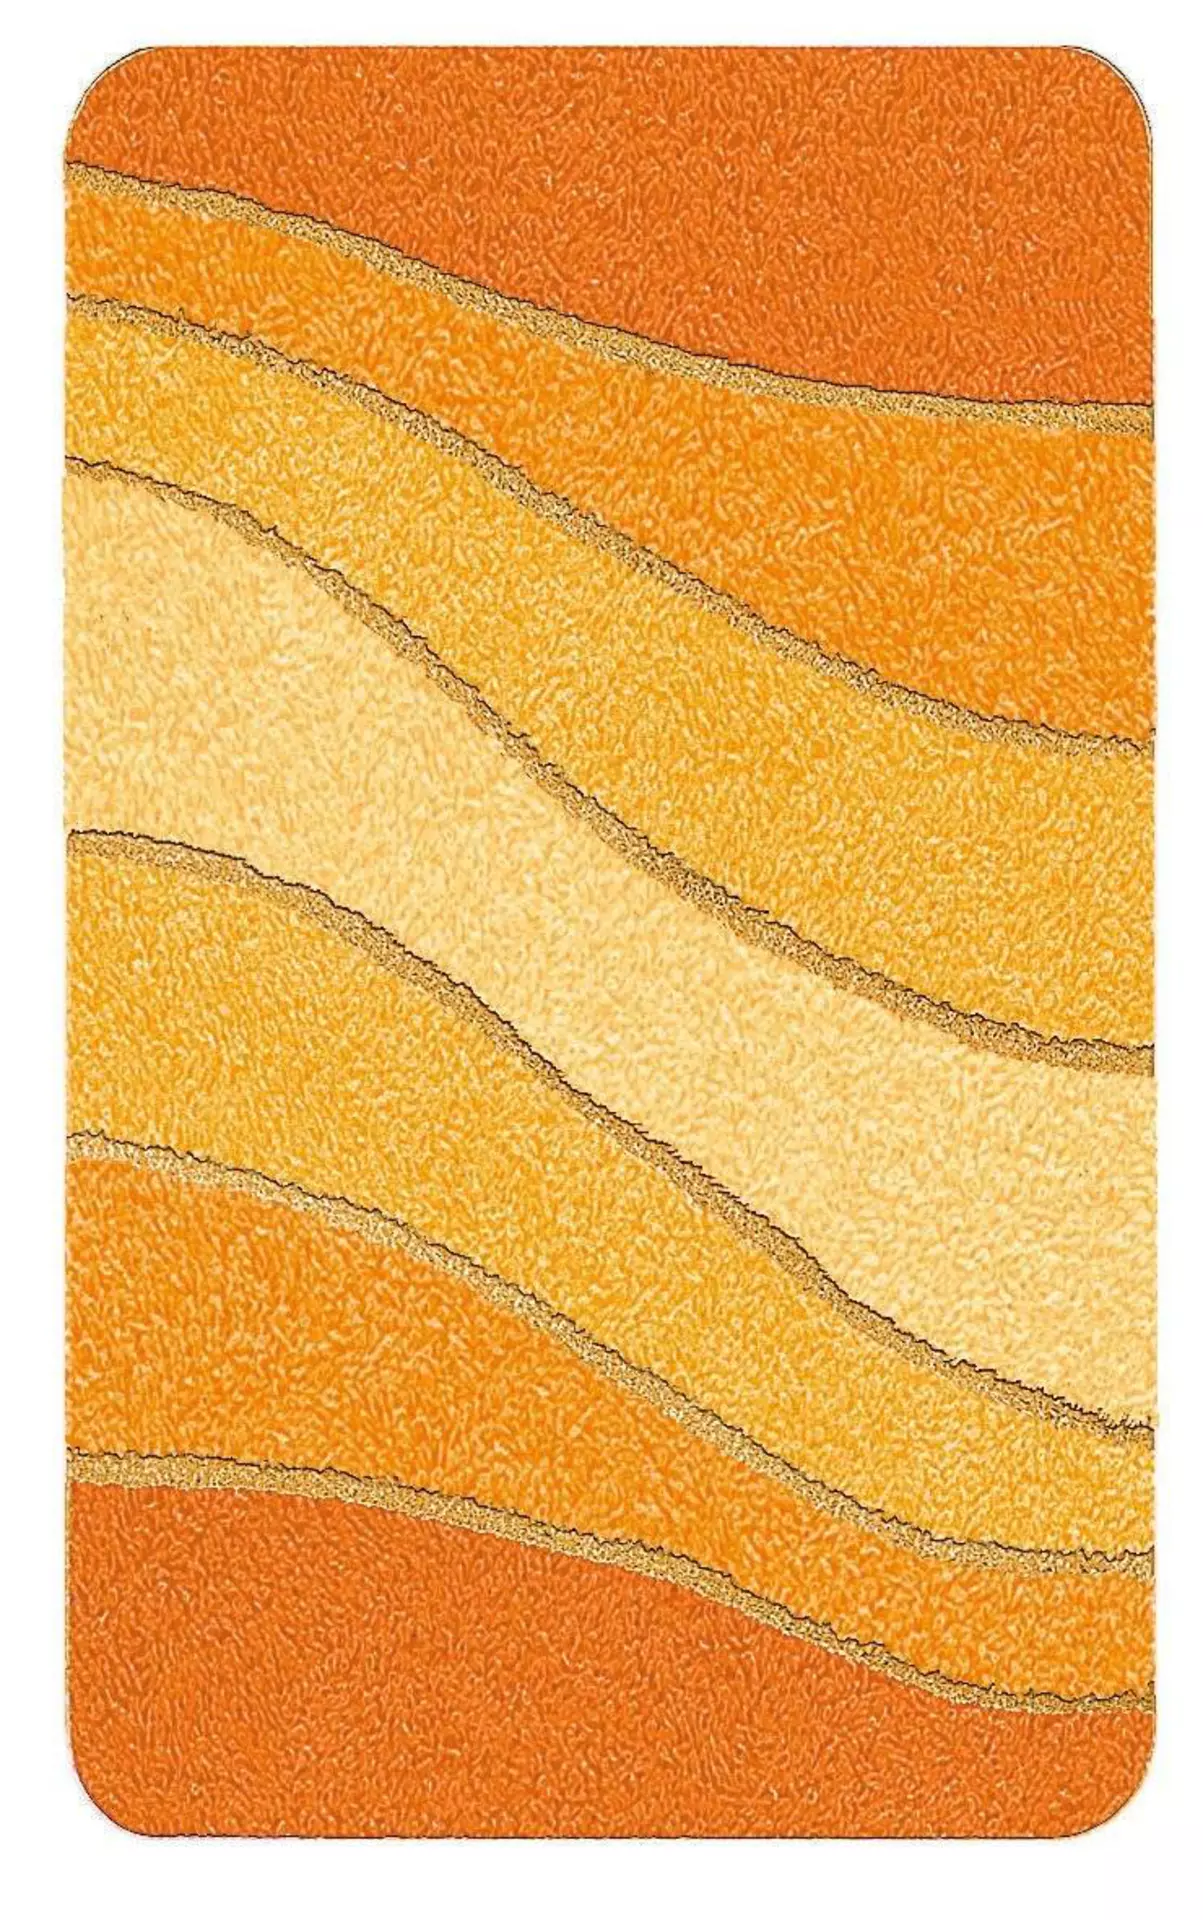 Badteppich Ocean Meusch Textil 120 x 2 x 70 cm